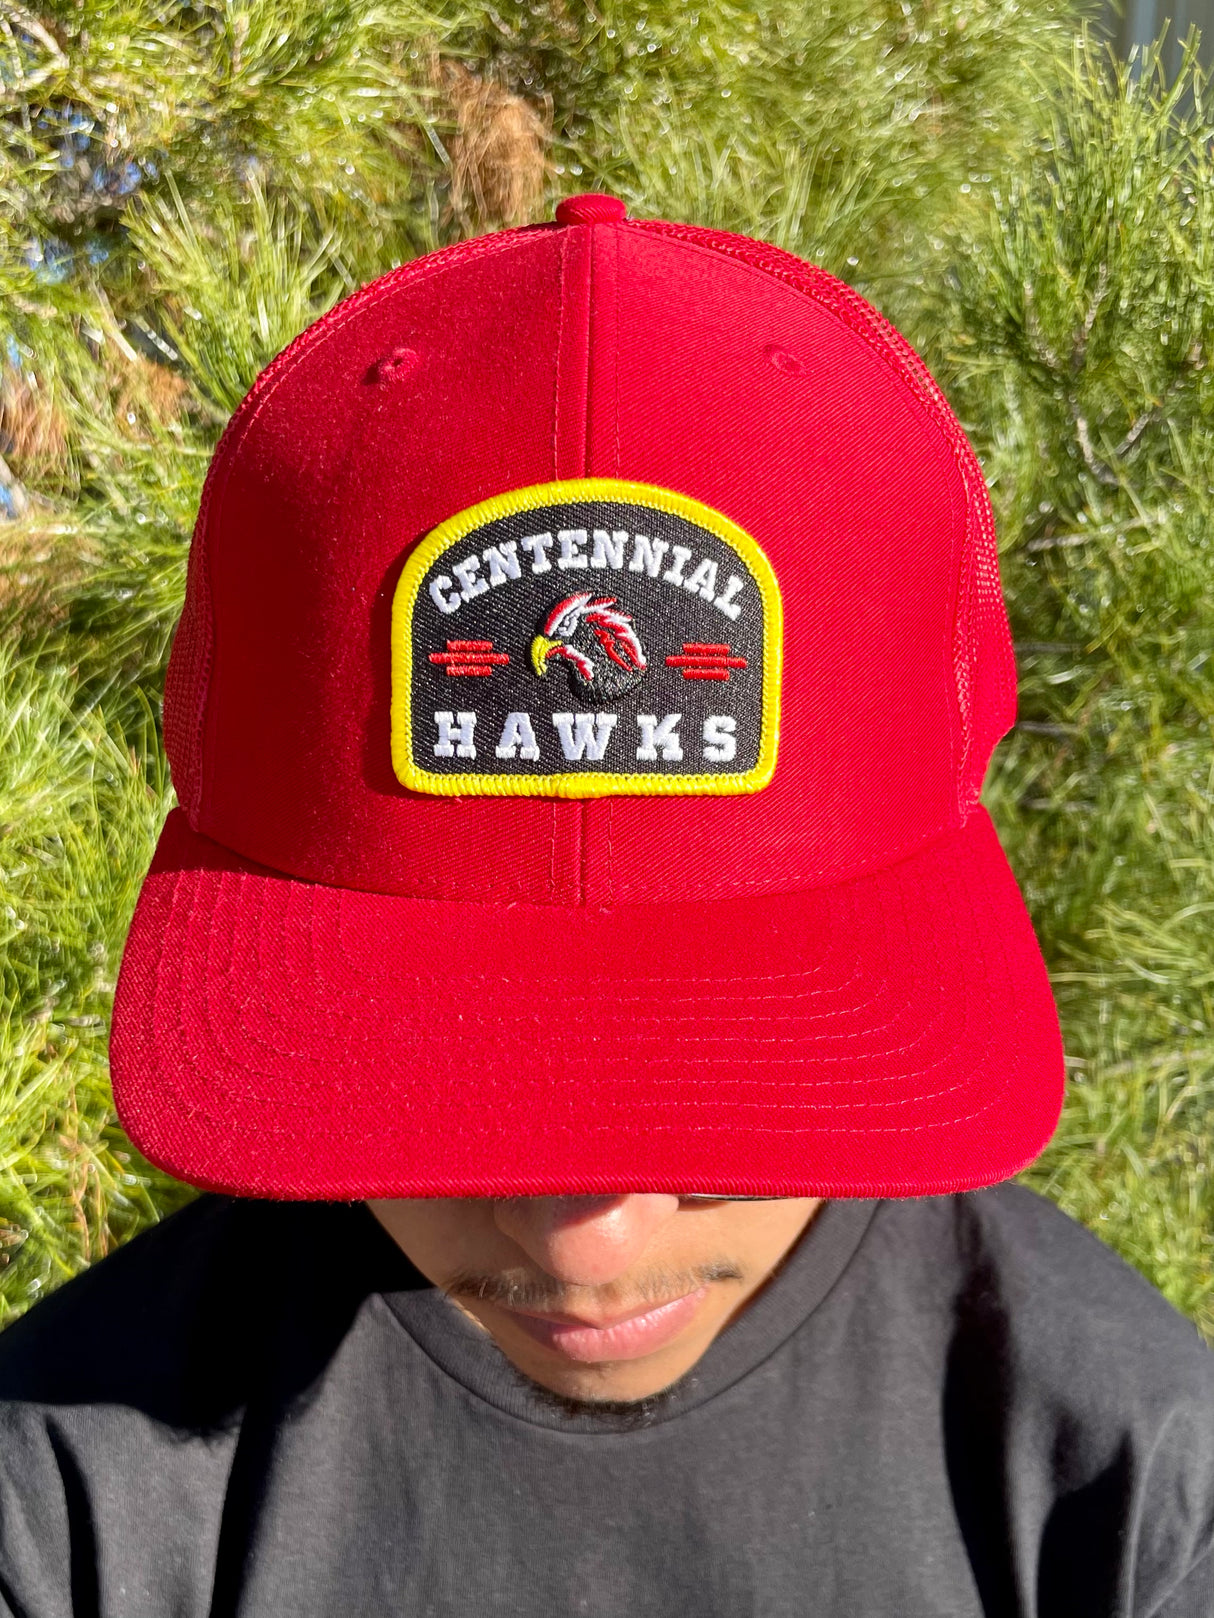 Centennial Hawks Trucker Cap